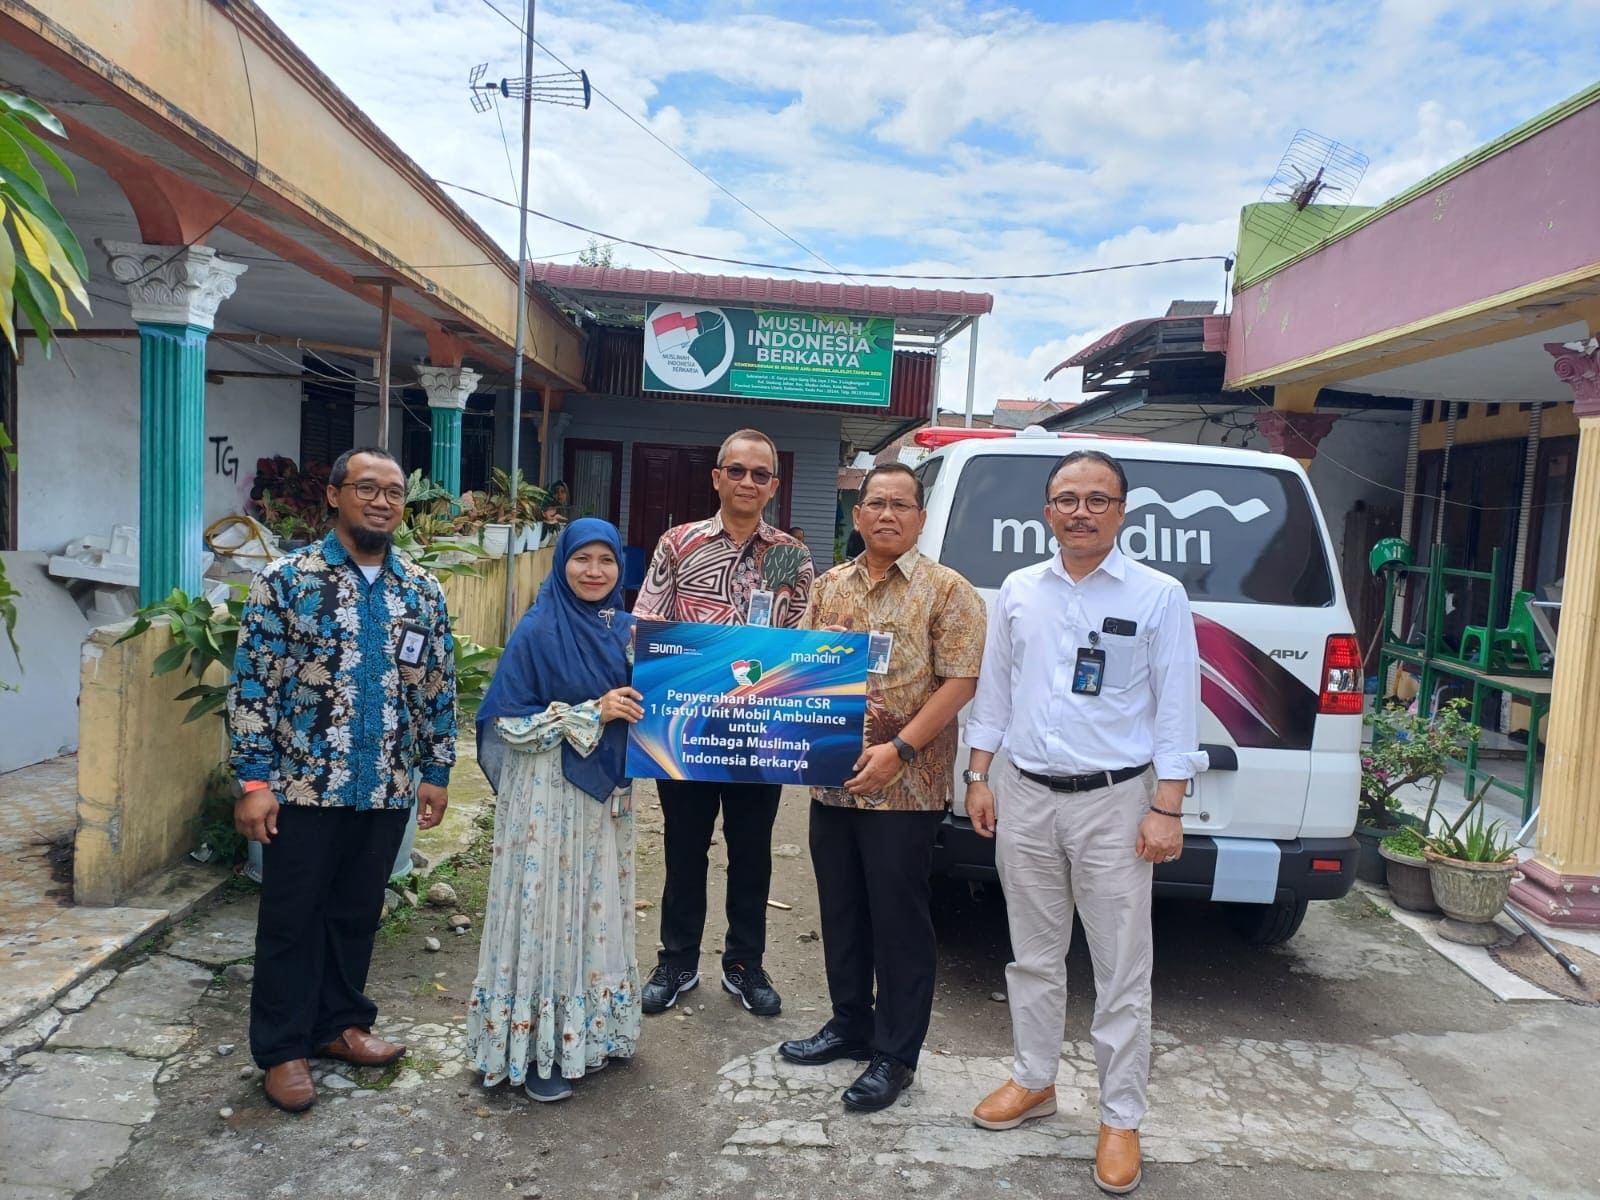 Bank Mandiri Serahkan Satu Unit Ambulance Kepada Lembaga Muslimah Indonesia Berkarya